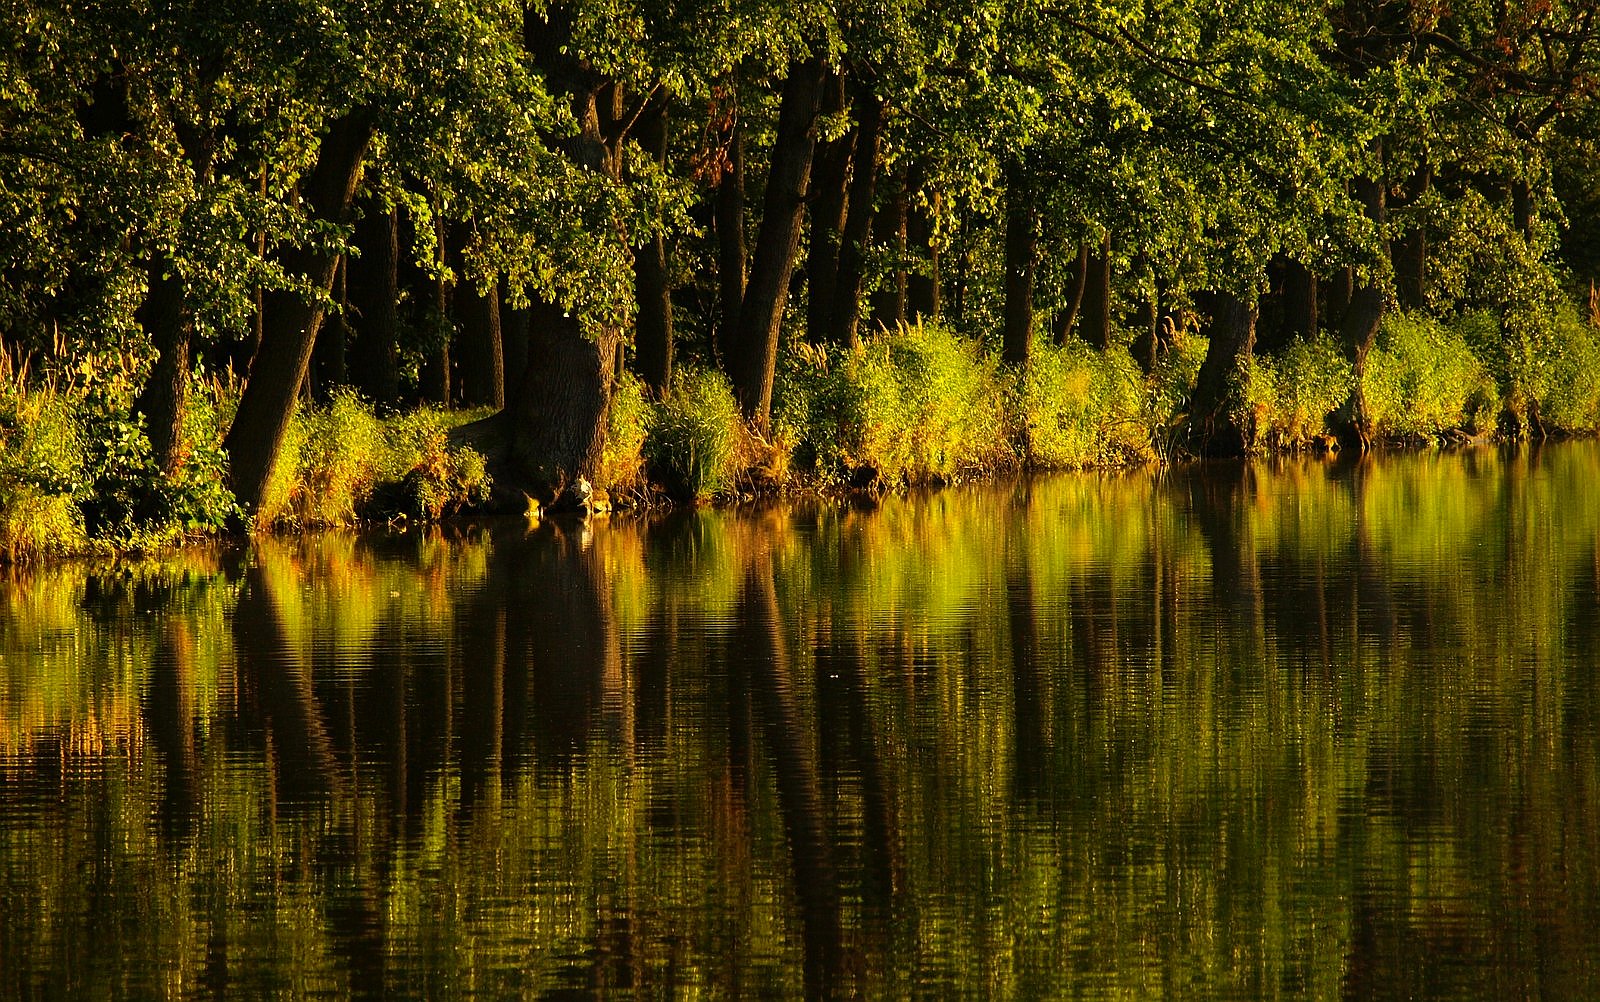 stromy u vody, zrcadlení / foto Michal Němeček